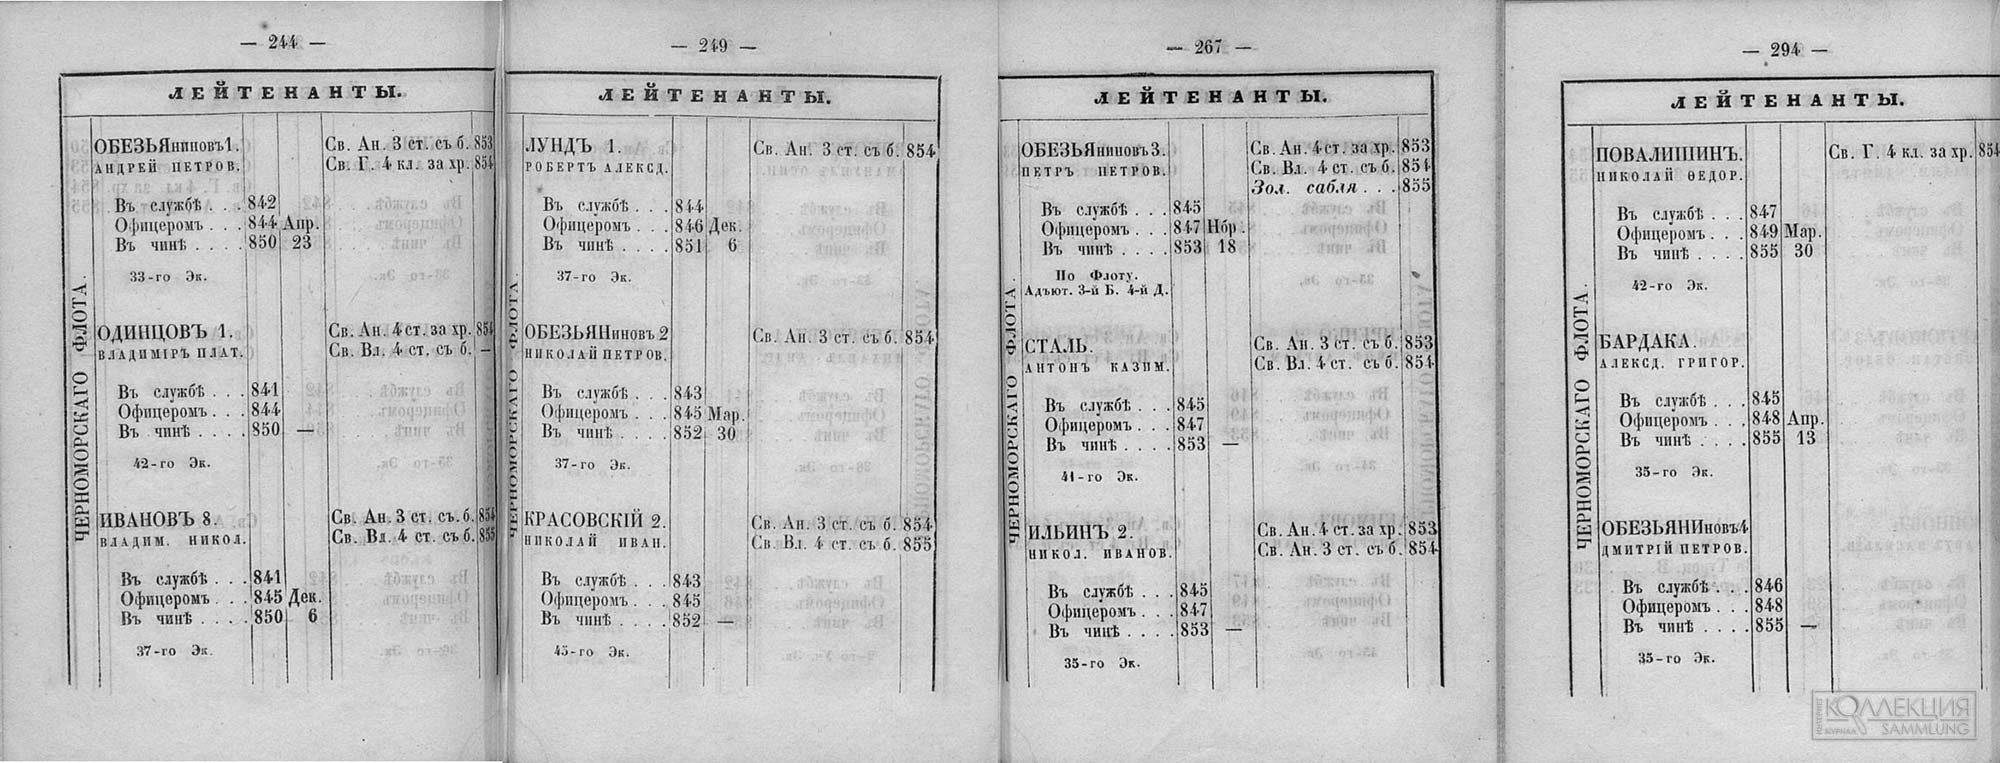 Страницы из флотского списка за 1855 г. с данными на четырёх братьев Обезьяниновых